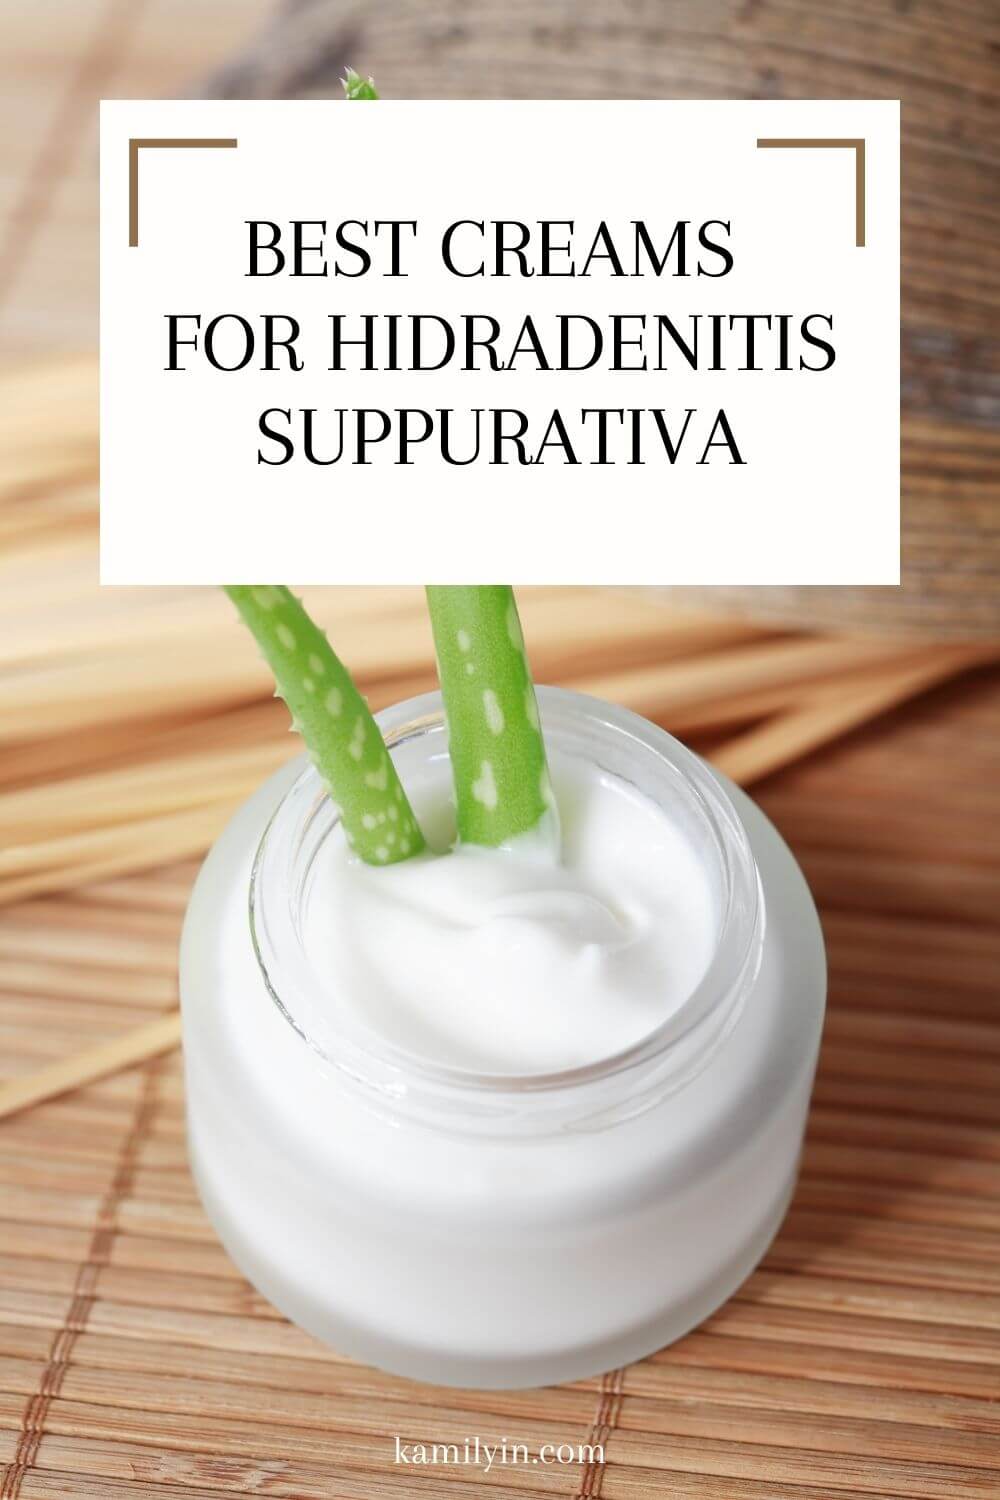  Best Creams for Hidradenitis Suppurativa